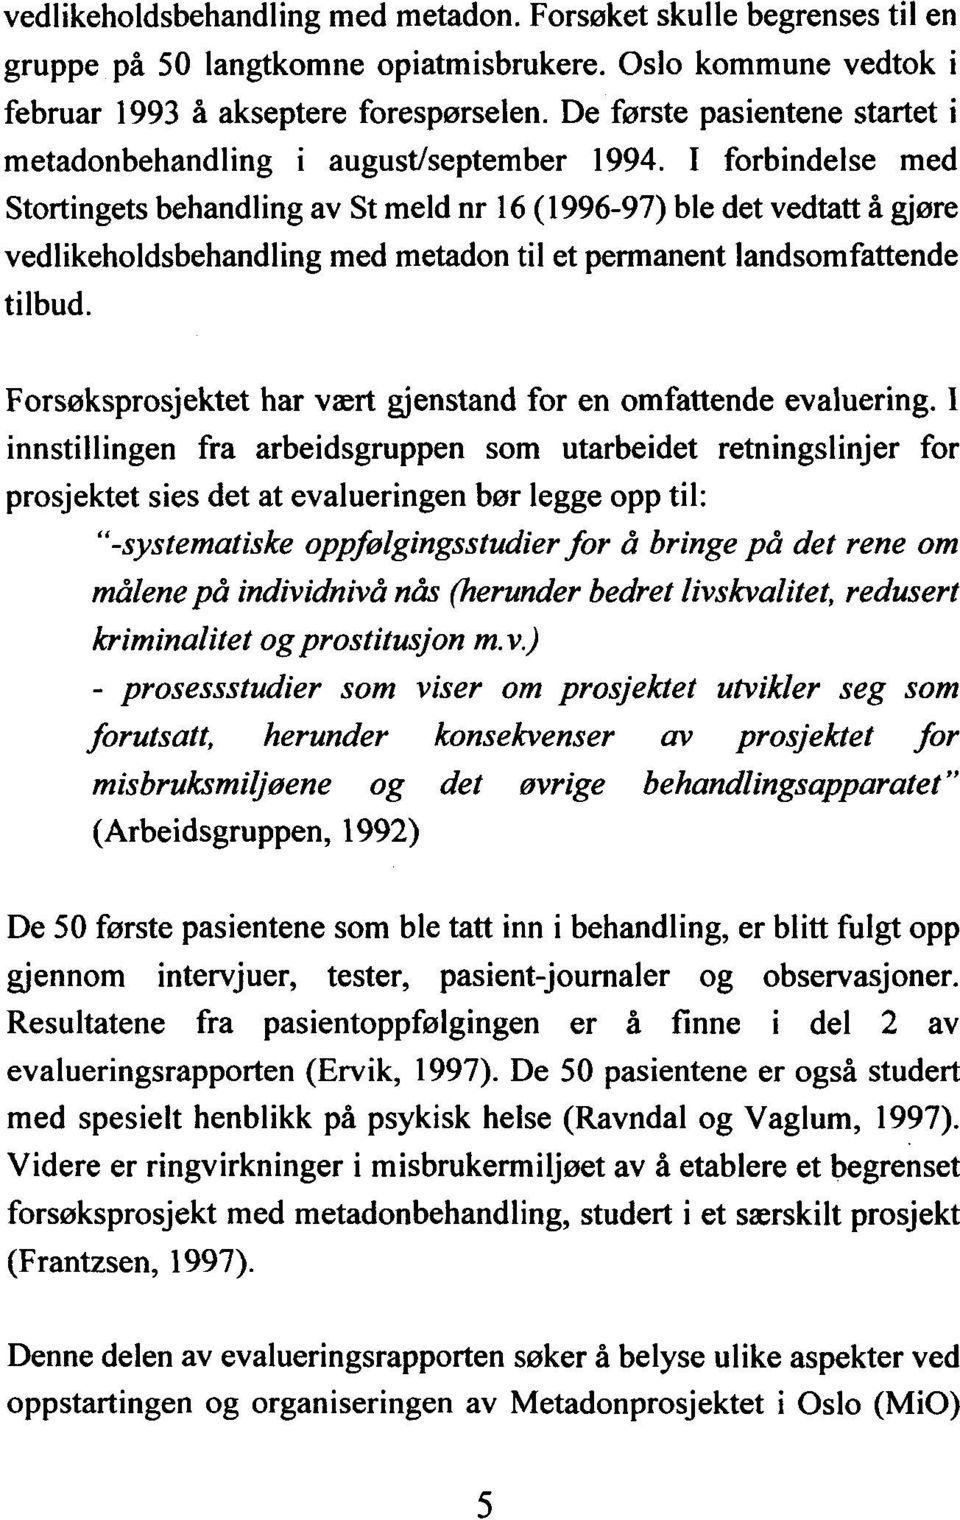 I forbindelse med Stortingets behandling av St meld nr ( 1996-97) 16 ble det vedtatt å gjøre vedlikeholdsbehandling med metadon til et permanent landsomfattende tilbud.